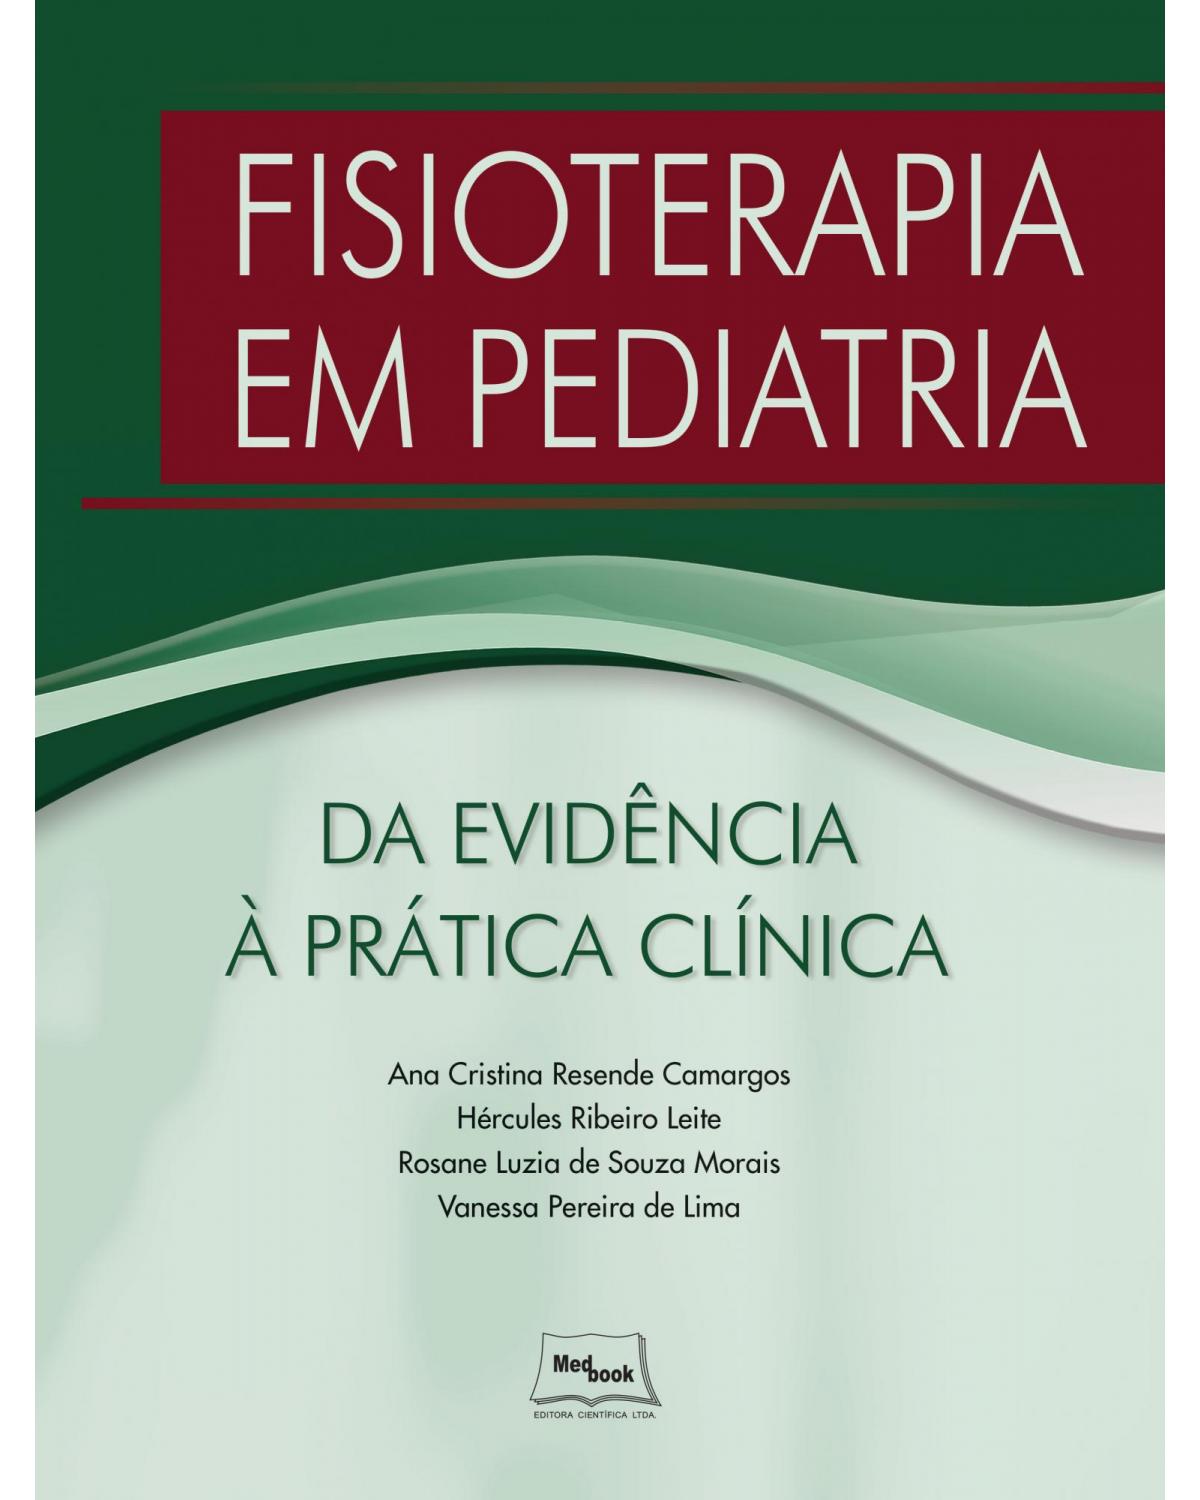 Fisioterapia em pediatria - Da evidência à prática clínica - 1ª Edição | 2019